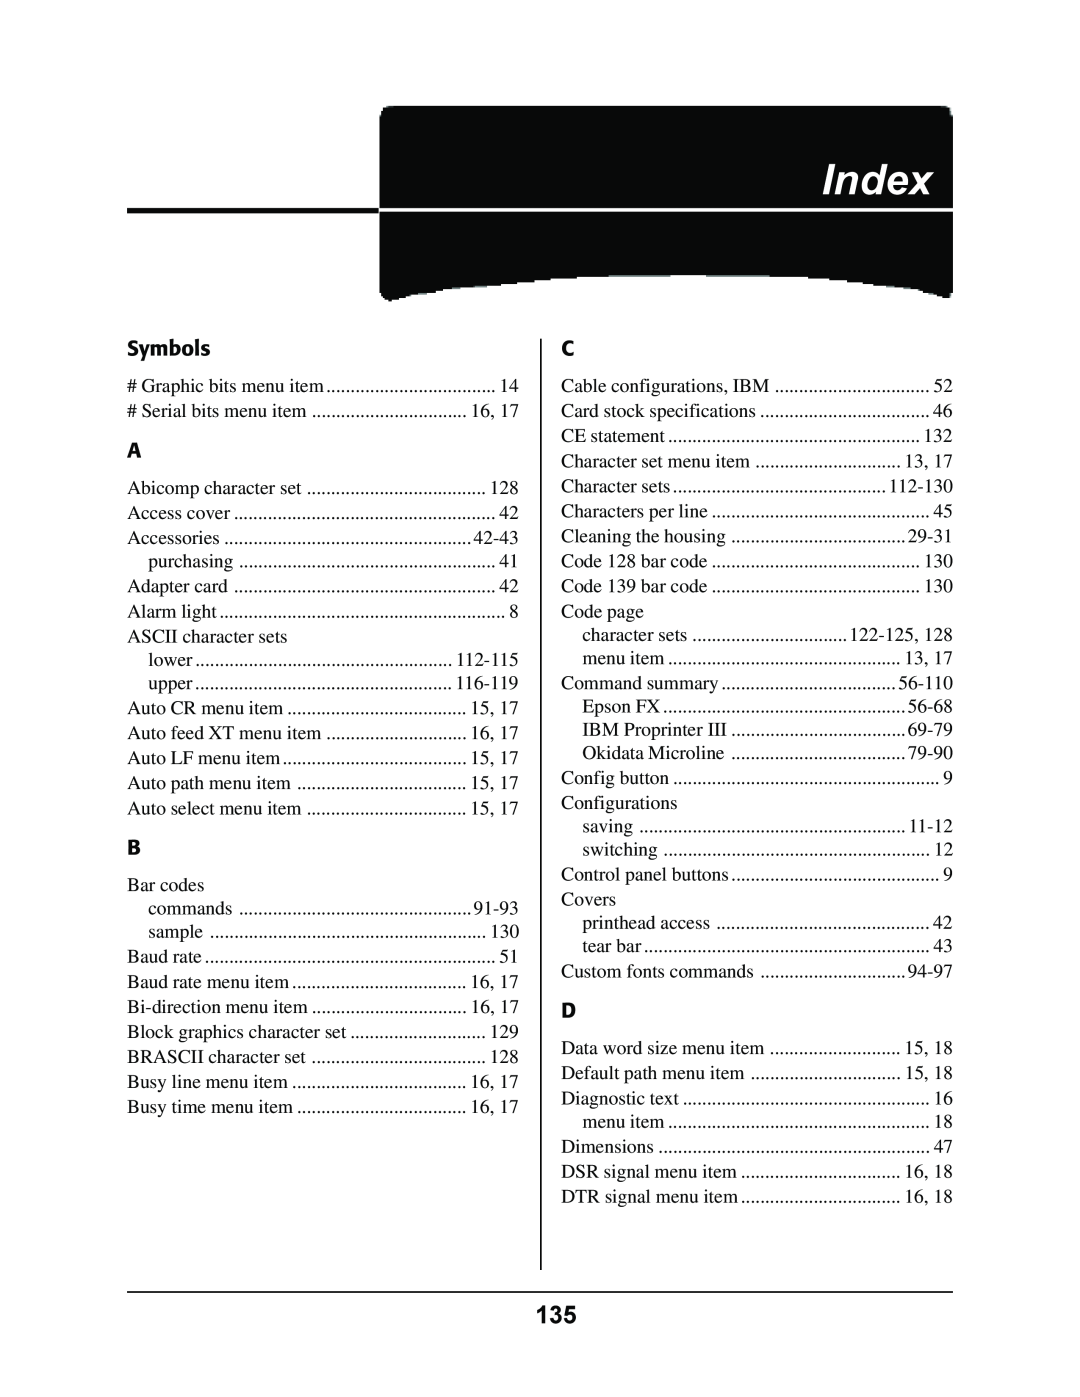 Oki 4410 manual Index, Symbols 